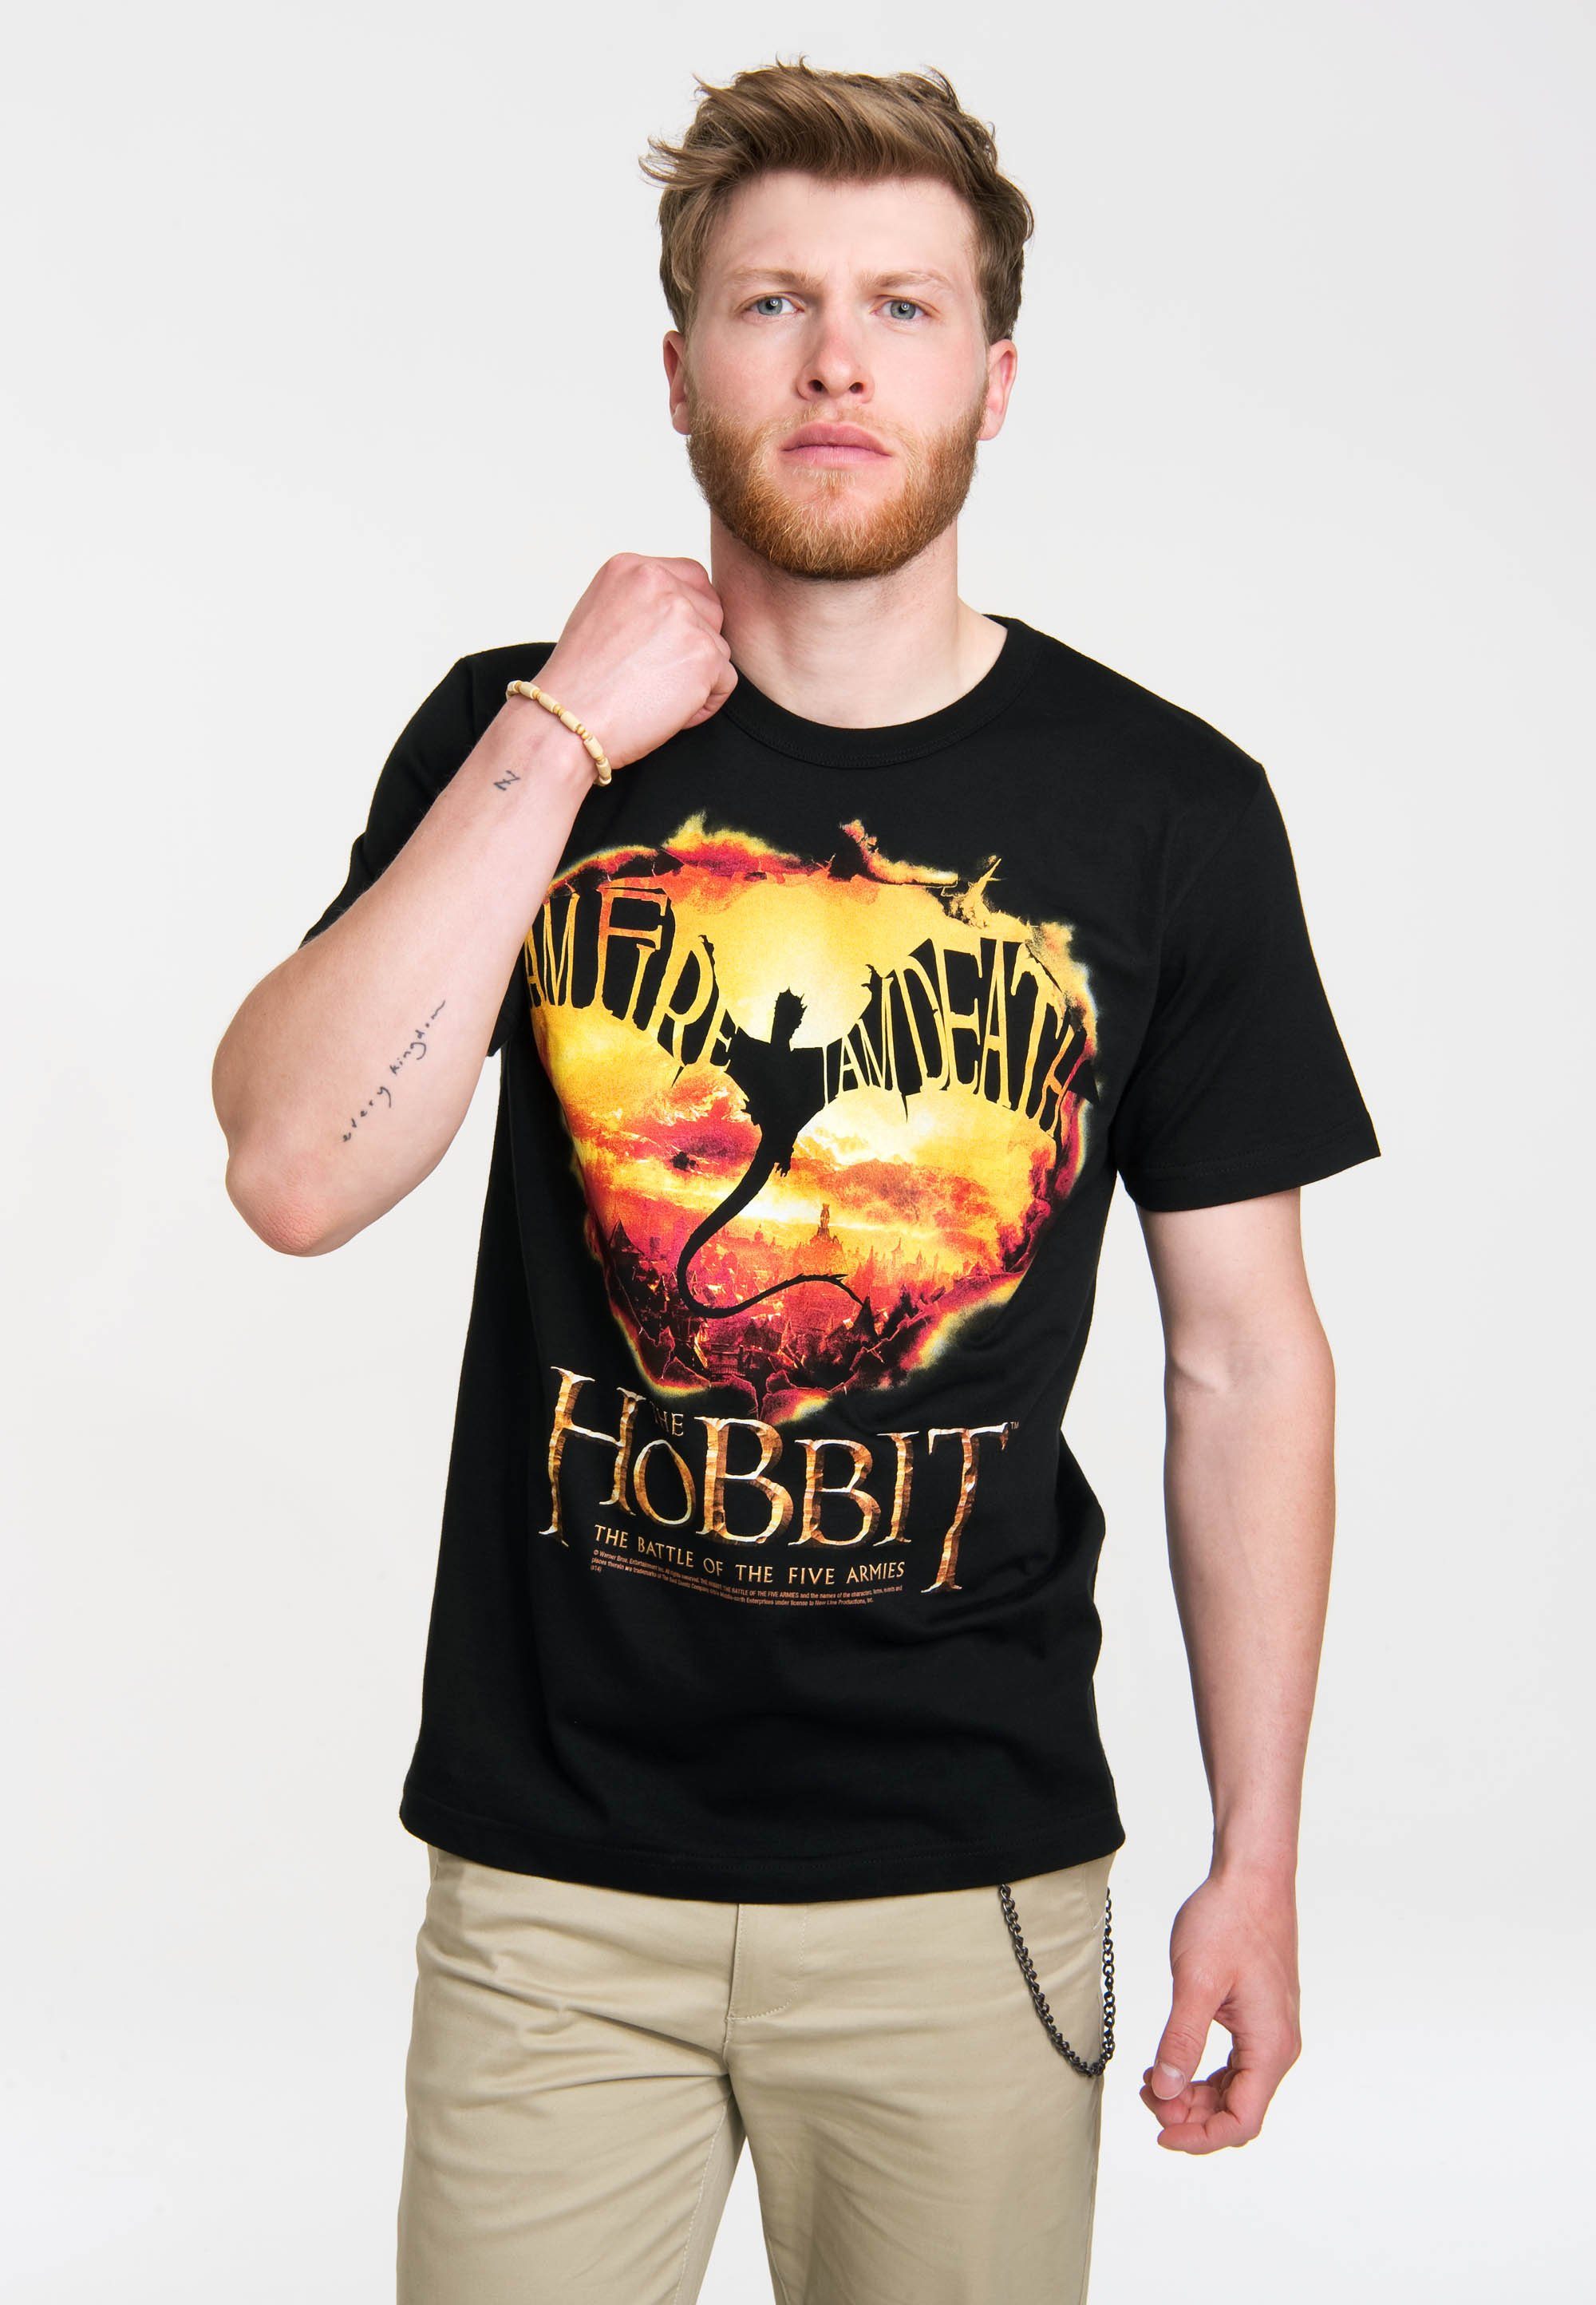 LOGOSHIRT T-Shirt I Am Fire, I Am Death - Hobbit mit coolem Print